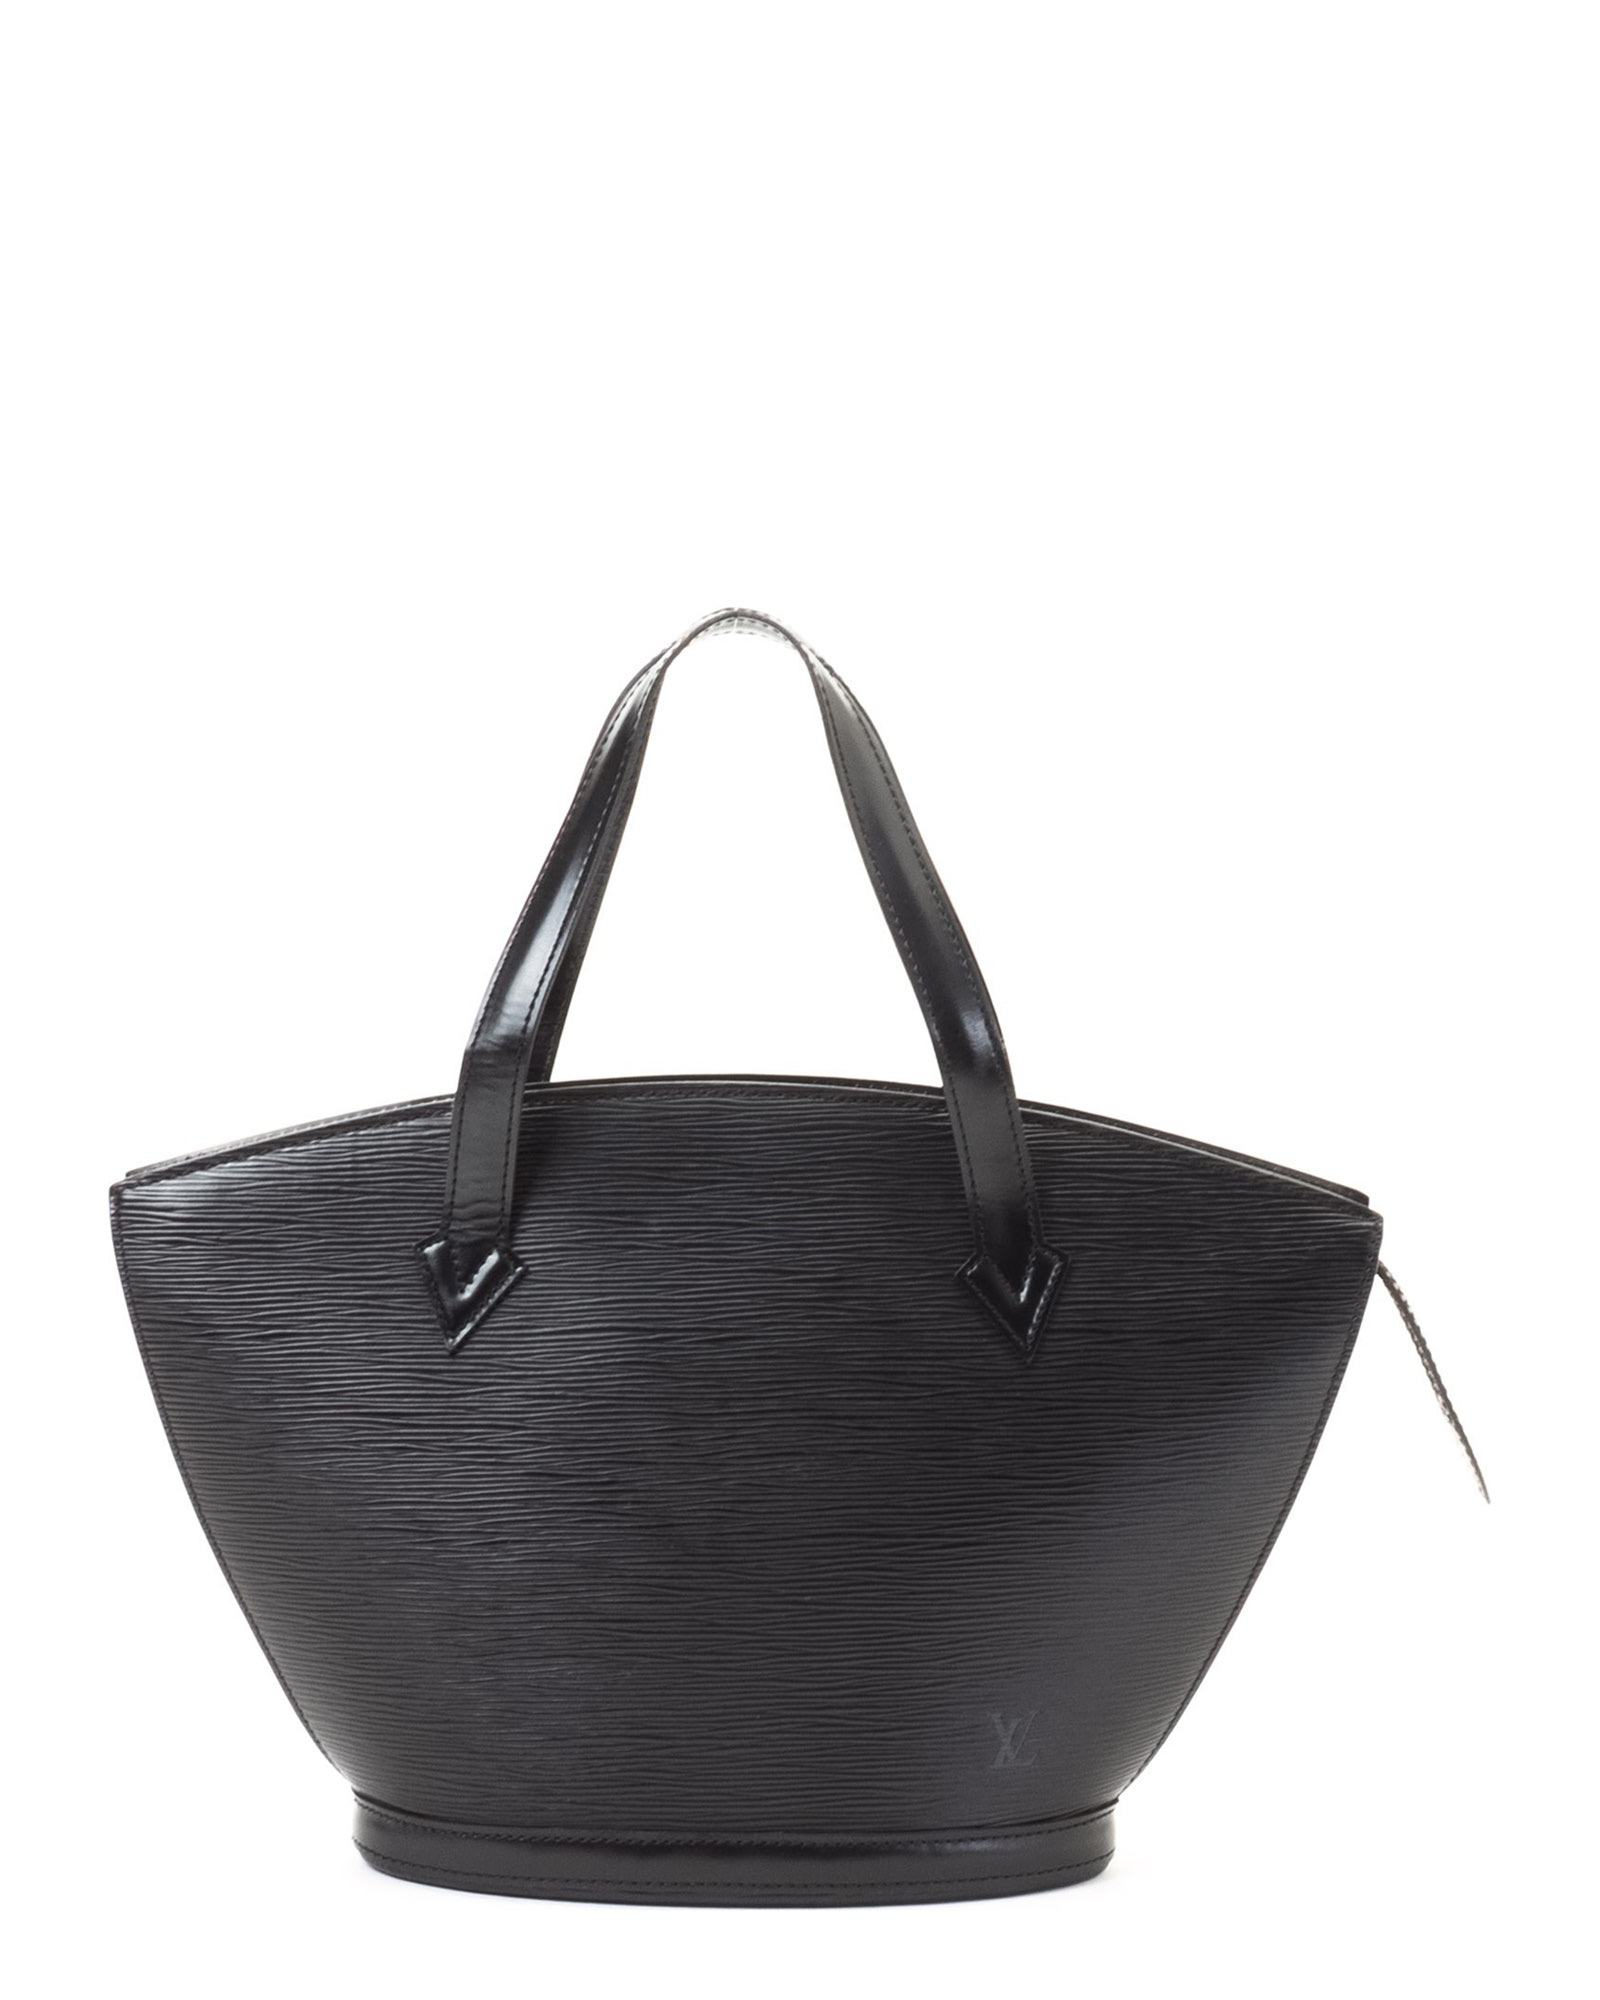 Louis vuitton Black Tote Bag - Vintage in Black | Lyst